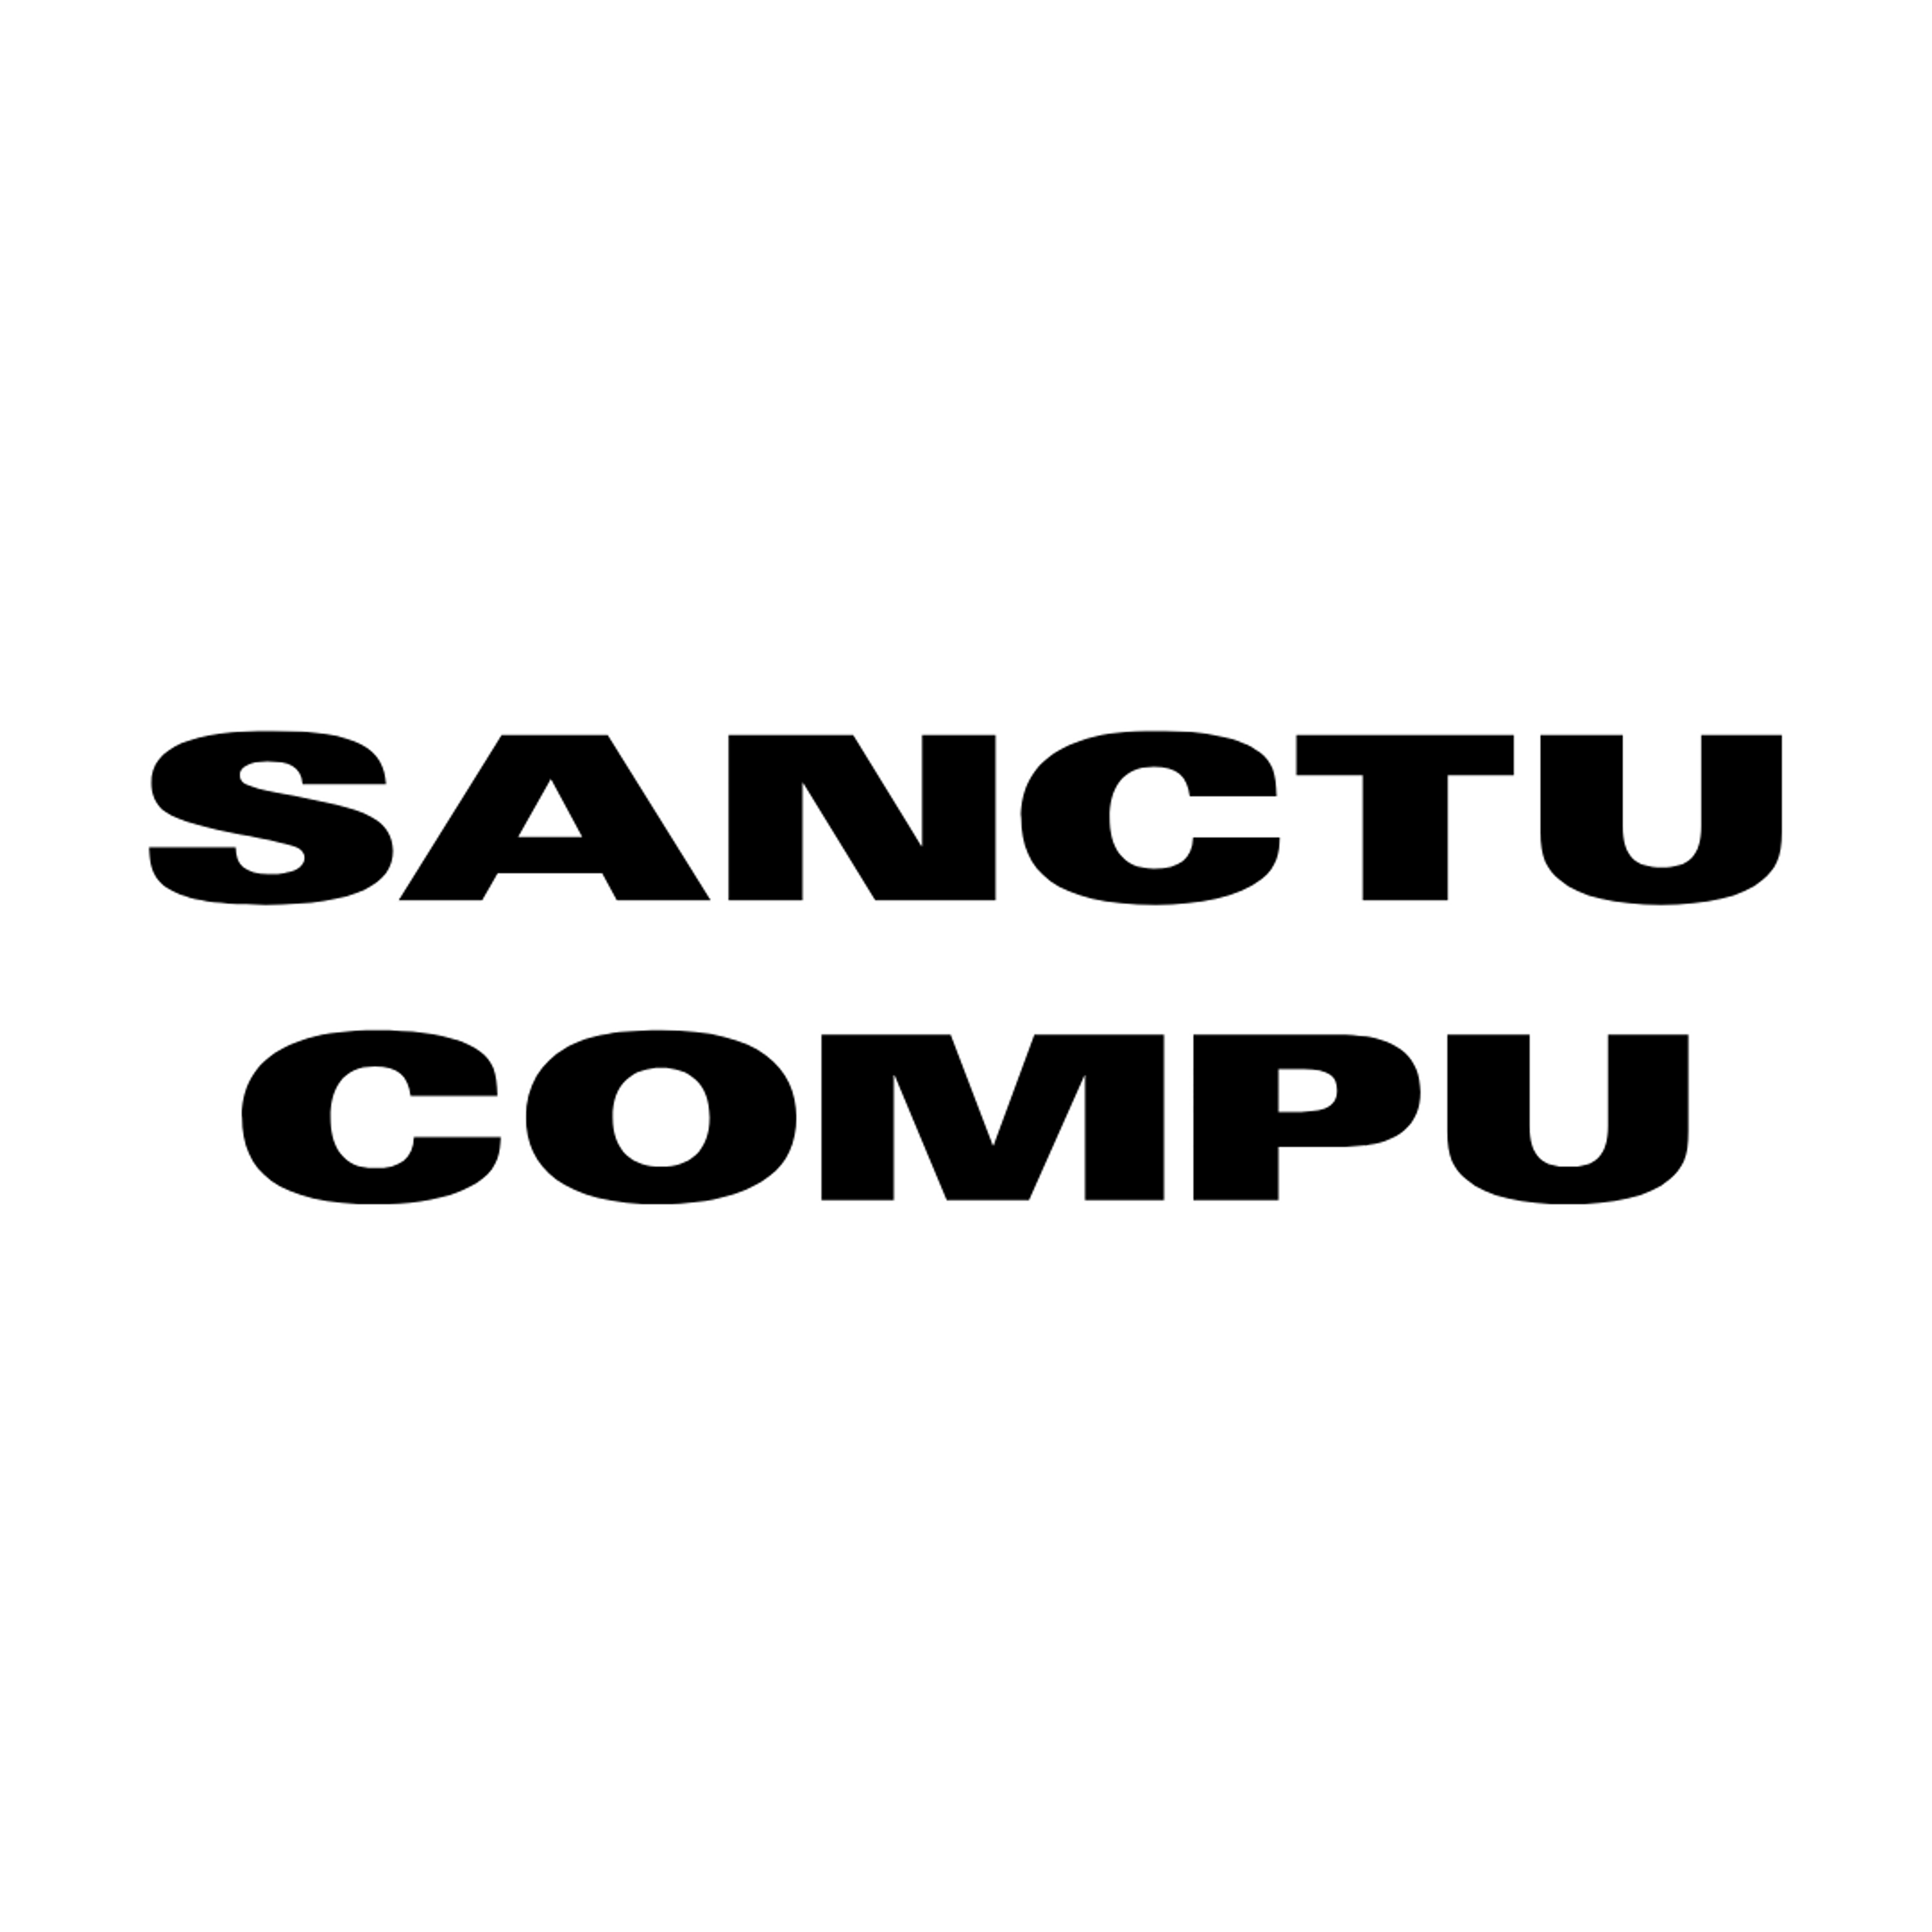 Sanctuary Computer